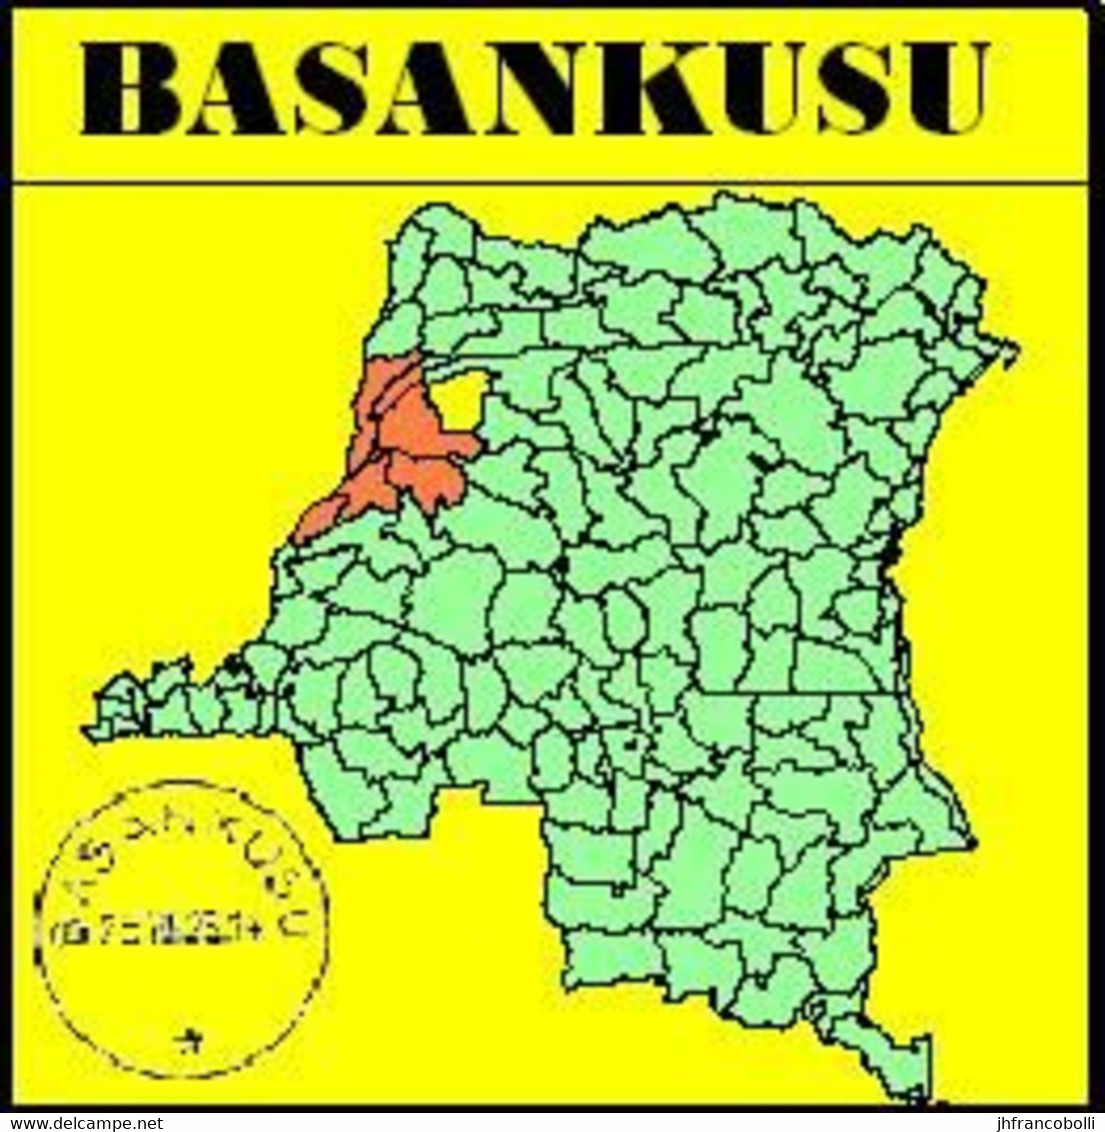 1923/1925 (°) BASANKUSU BELGIAN CONGO / CONGO BELGE  CANCEL STUDY [16] COB 110+55+135+173 + EIC 16 FIVE STAMPS - Abarten Und Kuriositäten